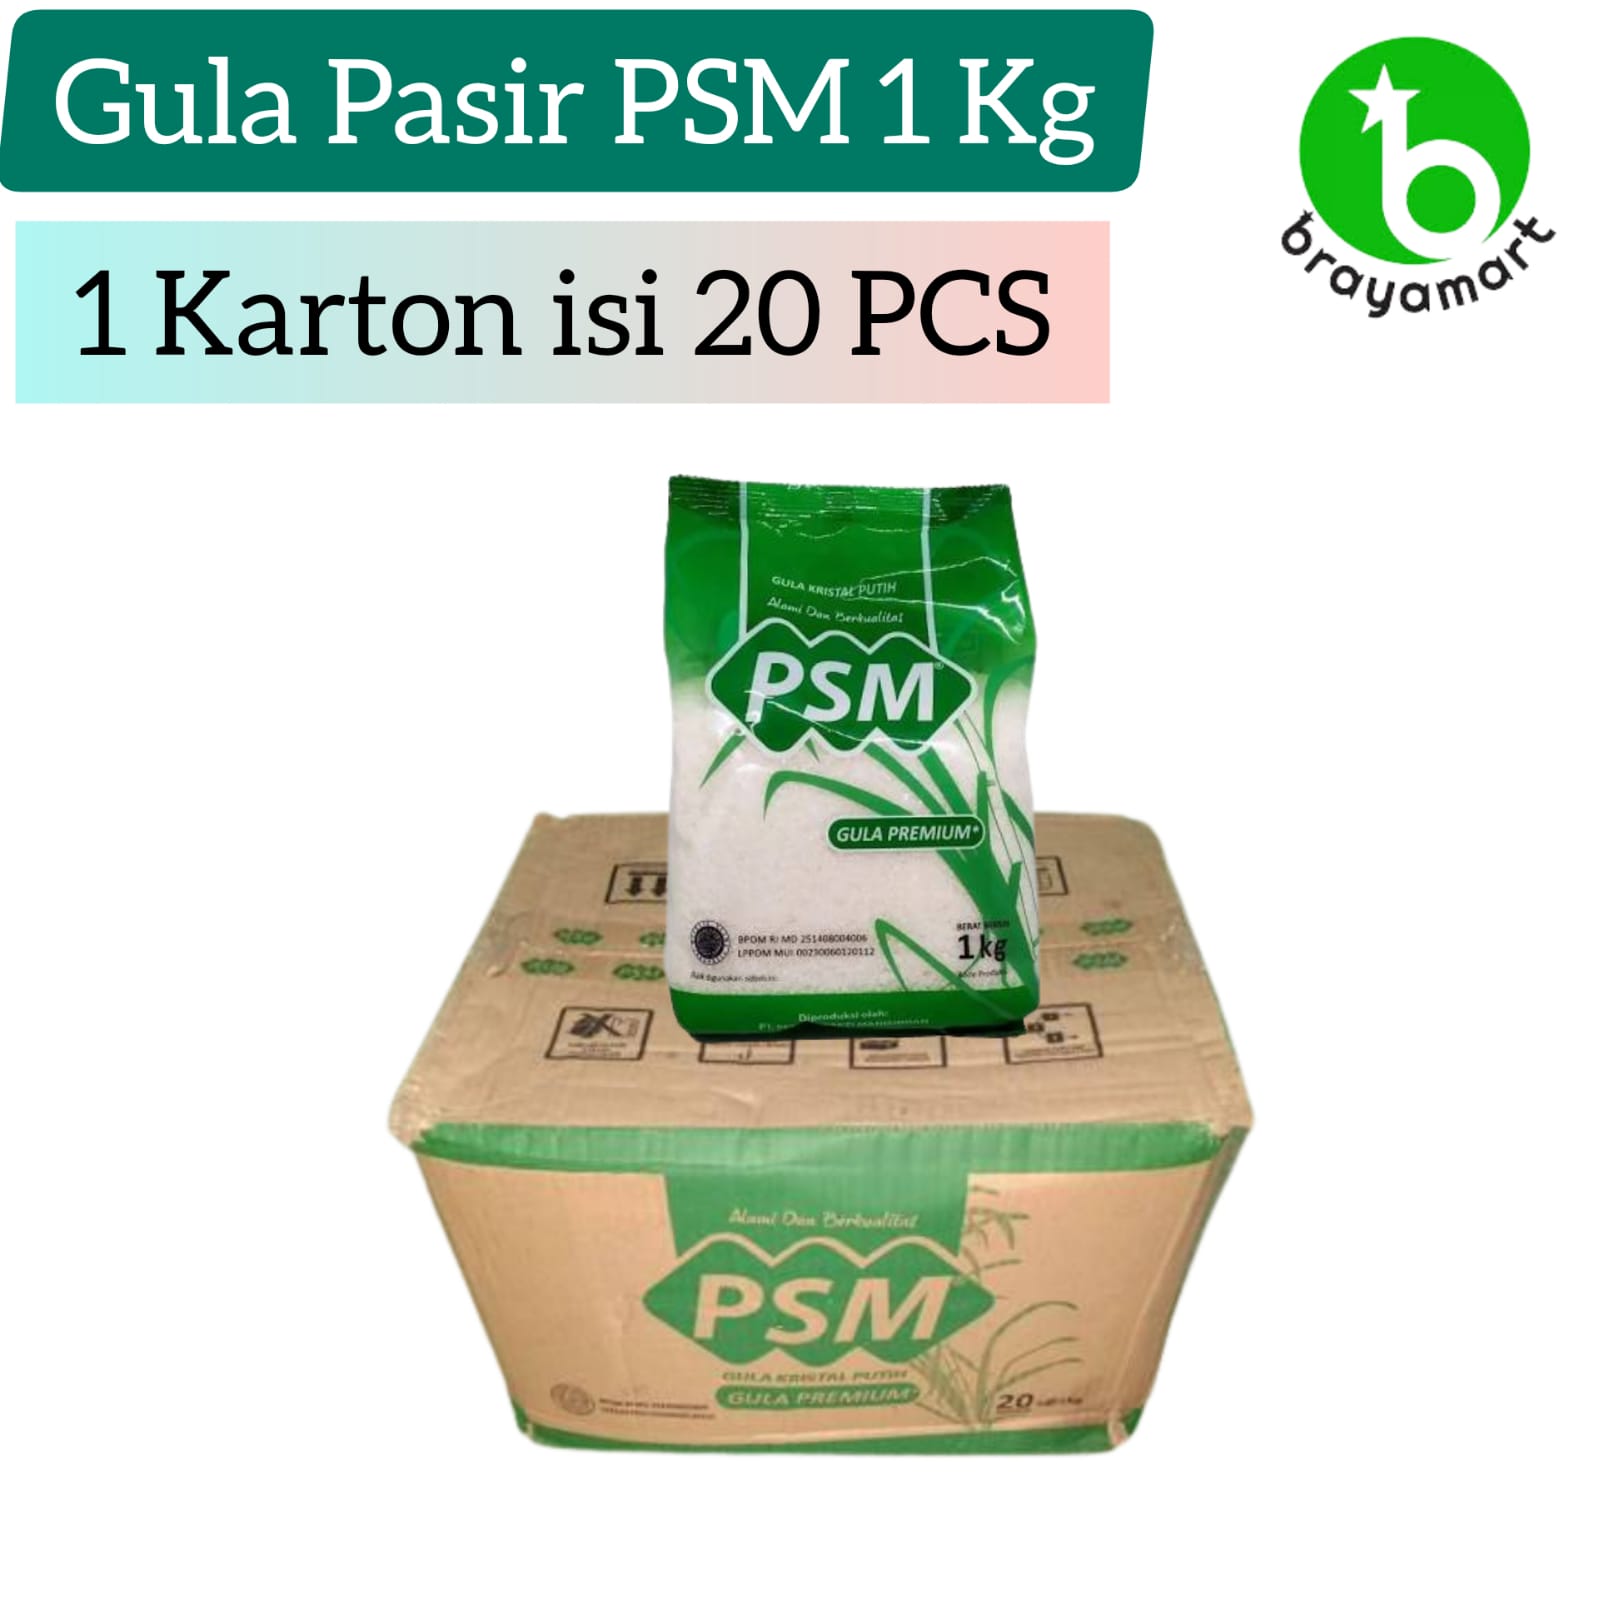 'Gula Pasir PSM 1 Kg (1 Karton)'